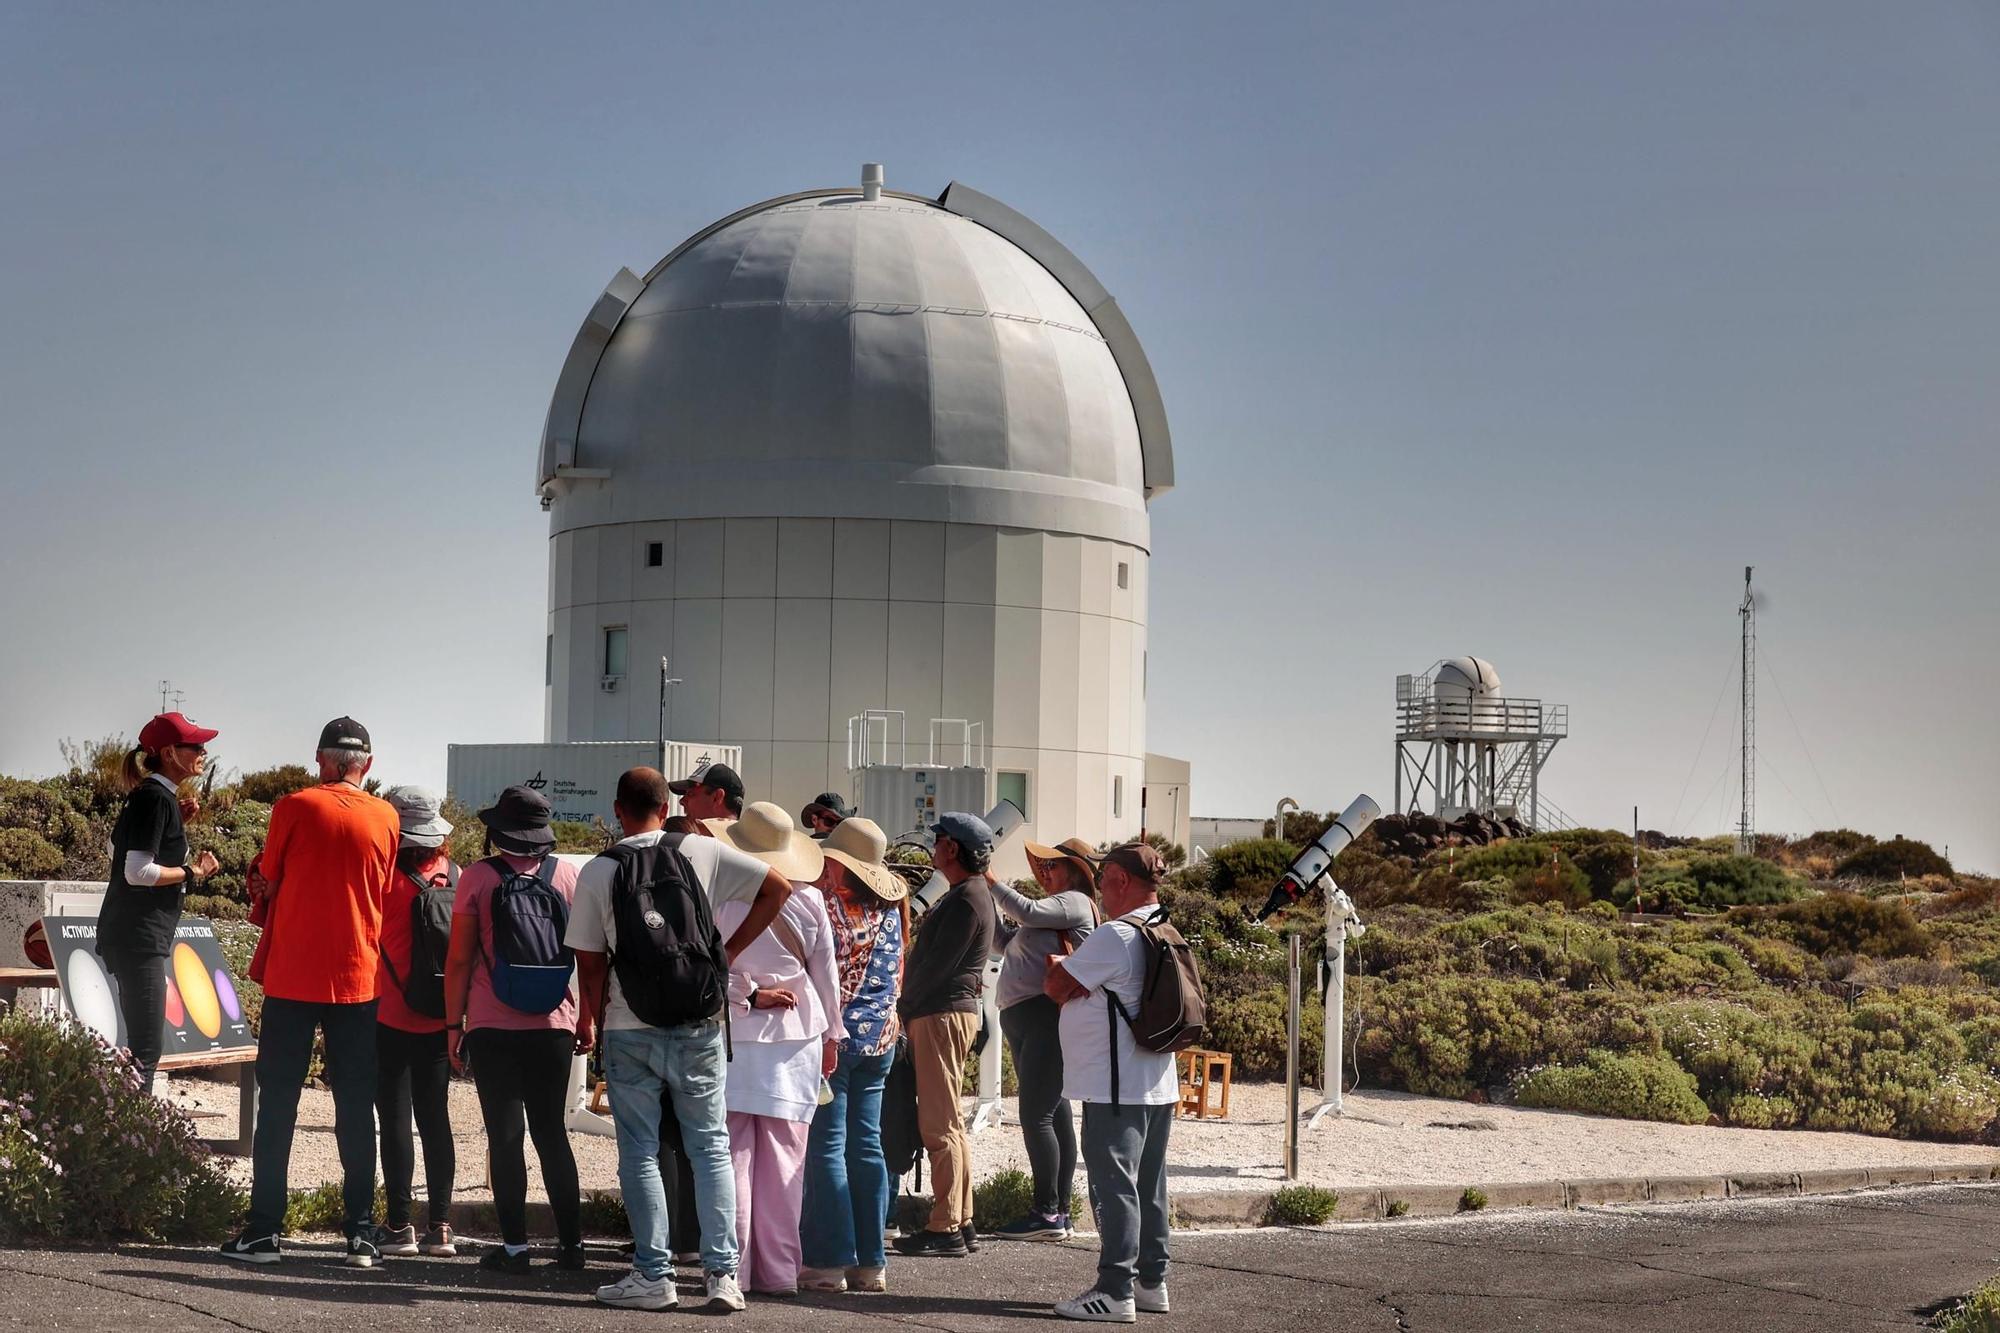 Día de puertas abiertas en el Observatorio del Teide